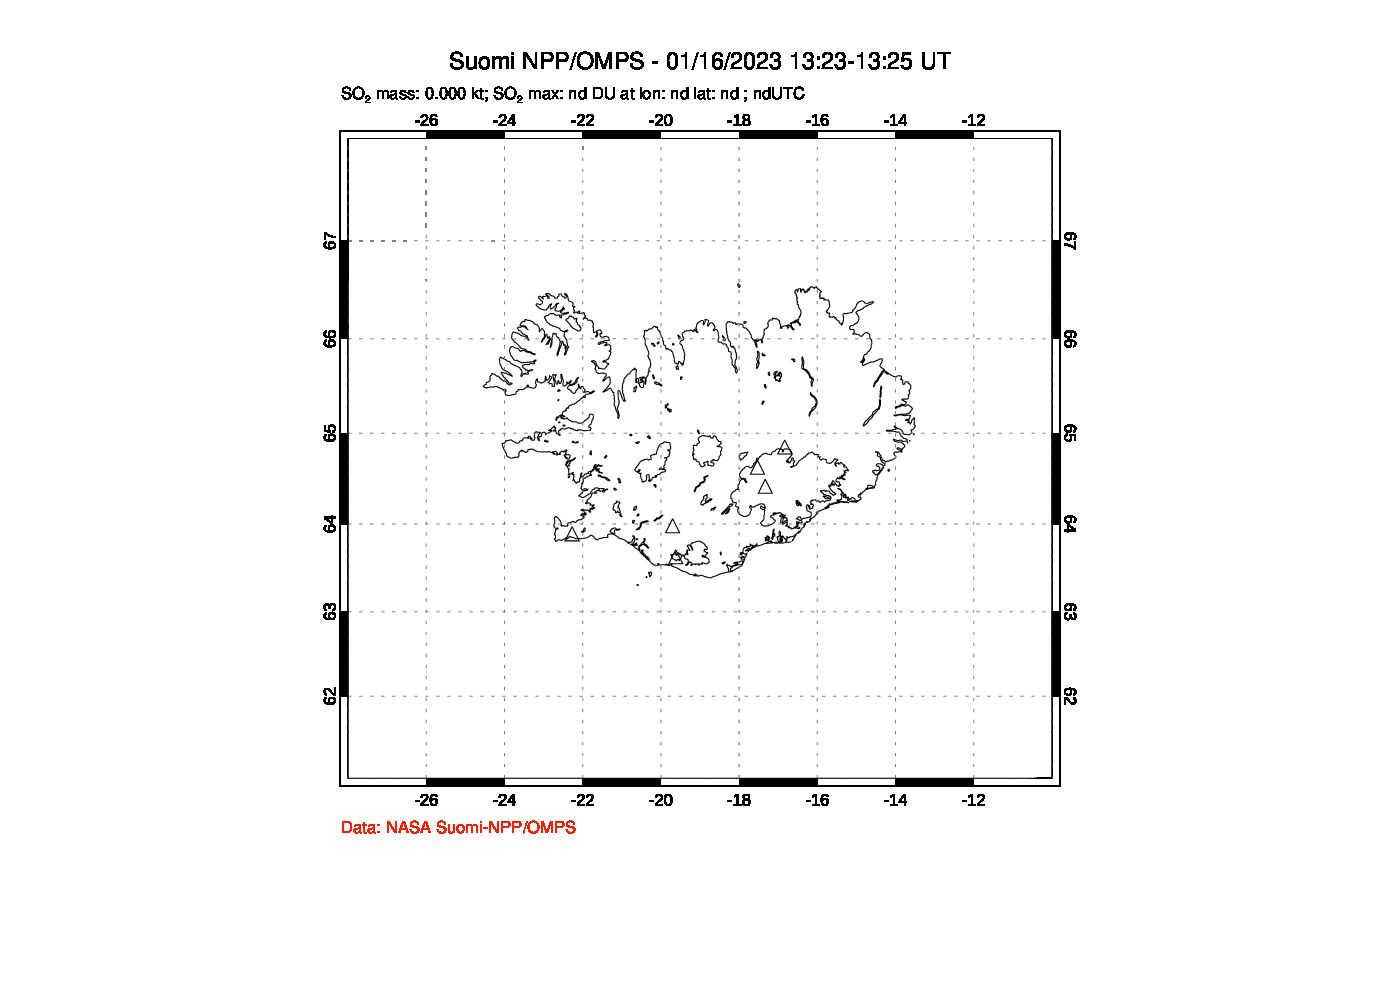 A sulfur dioxide image over Iceland on Jan 16, 2023.